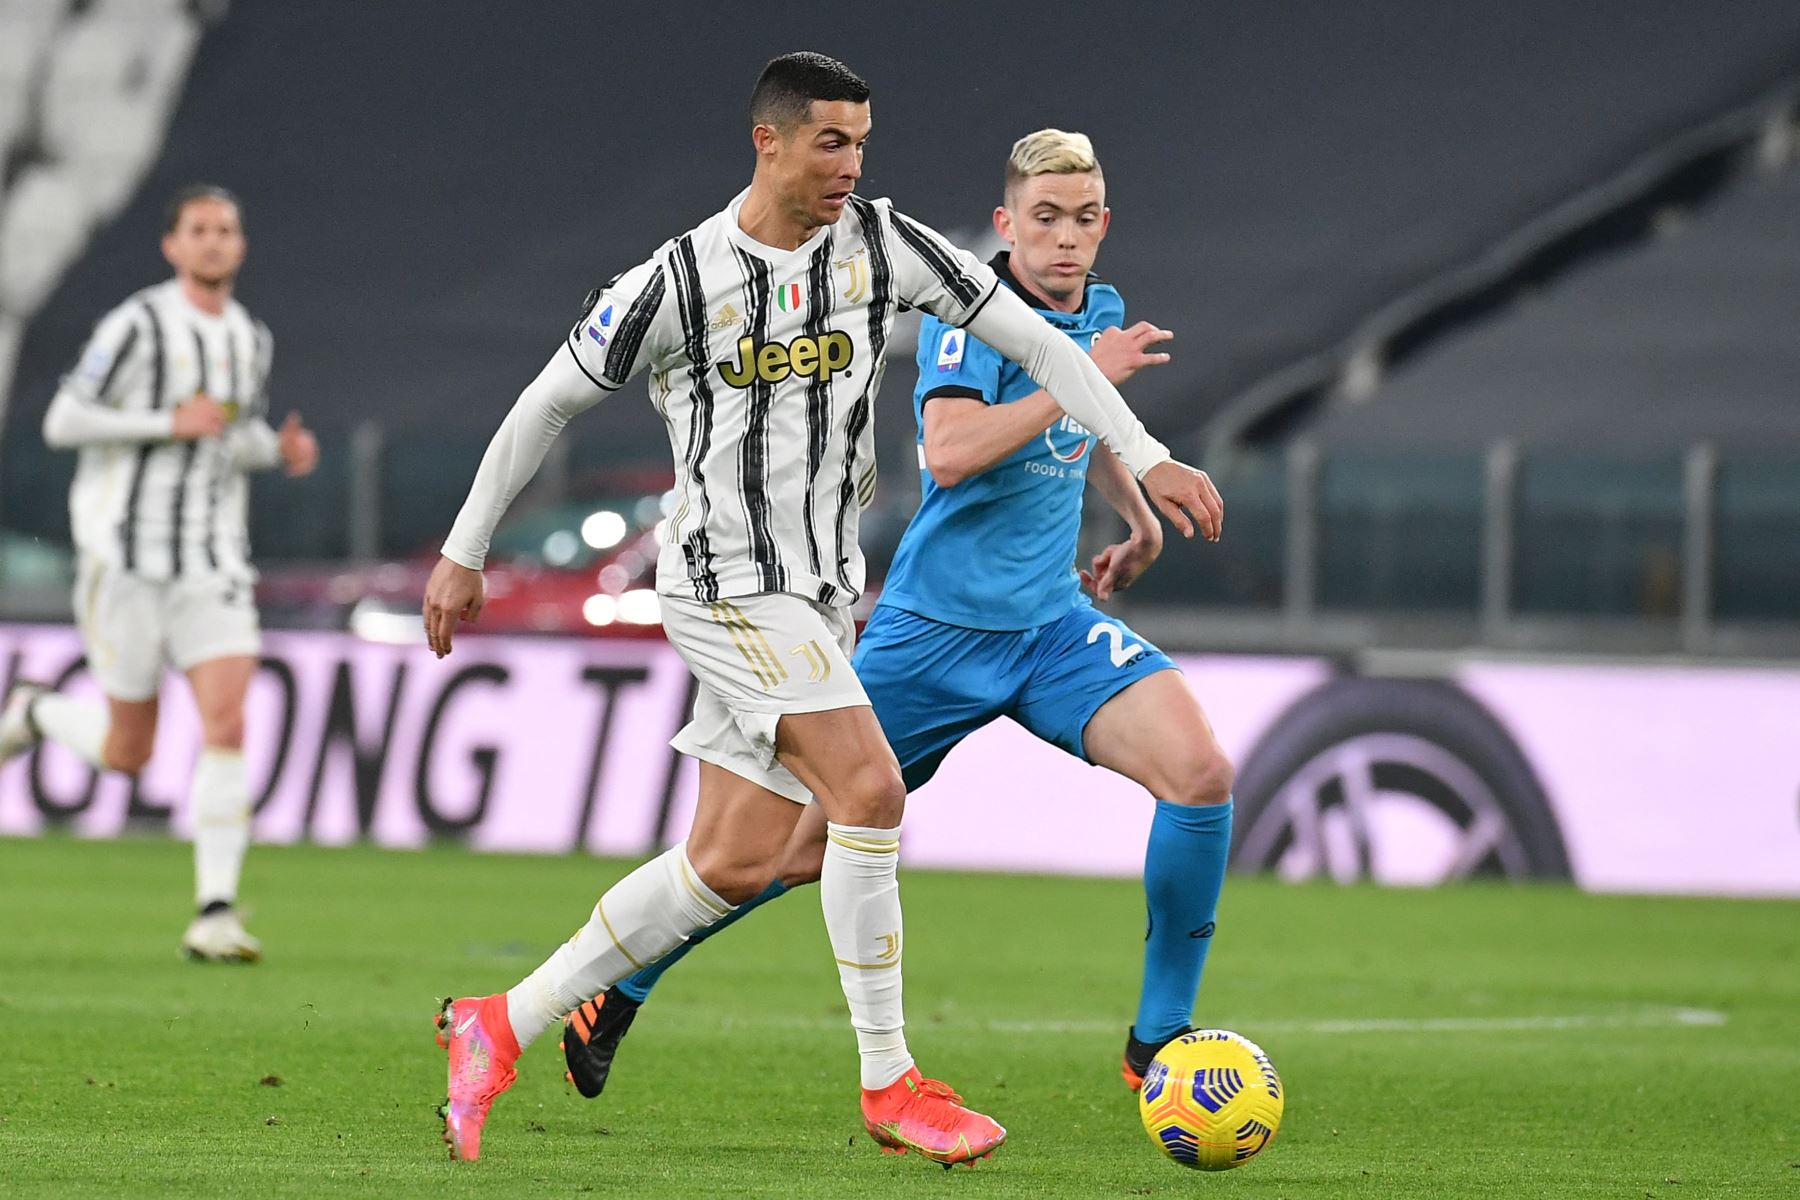 El delantero portugués de la Juventus, Cristiano Ronaldo, desafía al mediocampista argentino de Spezia, Nahuel Estévez, durante el partido de fútbol de la Serie A. Foto: AFP